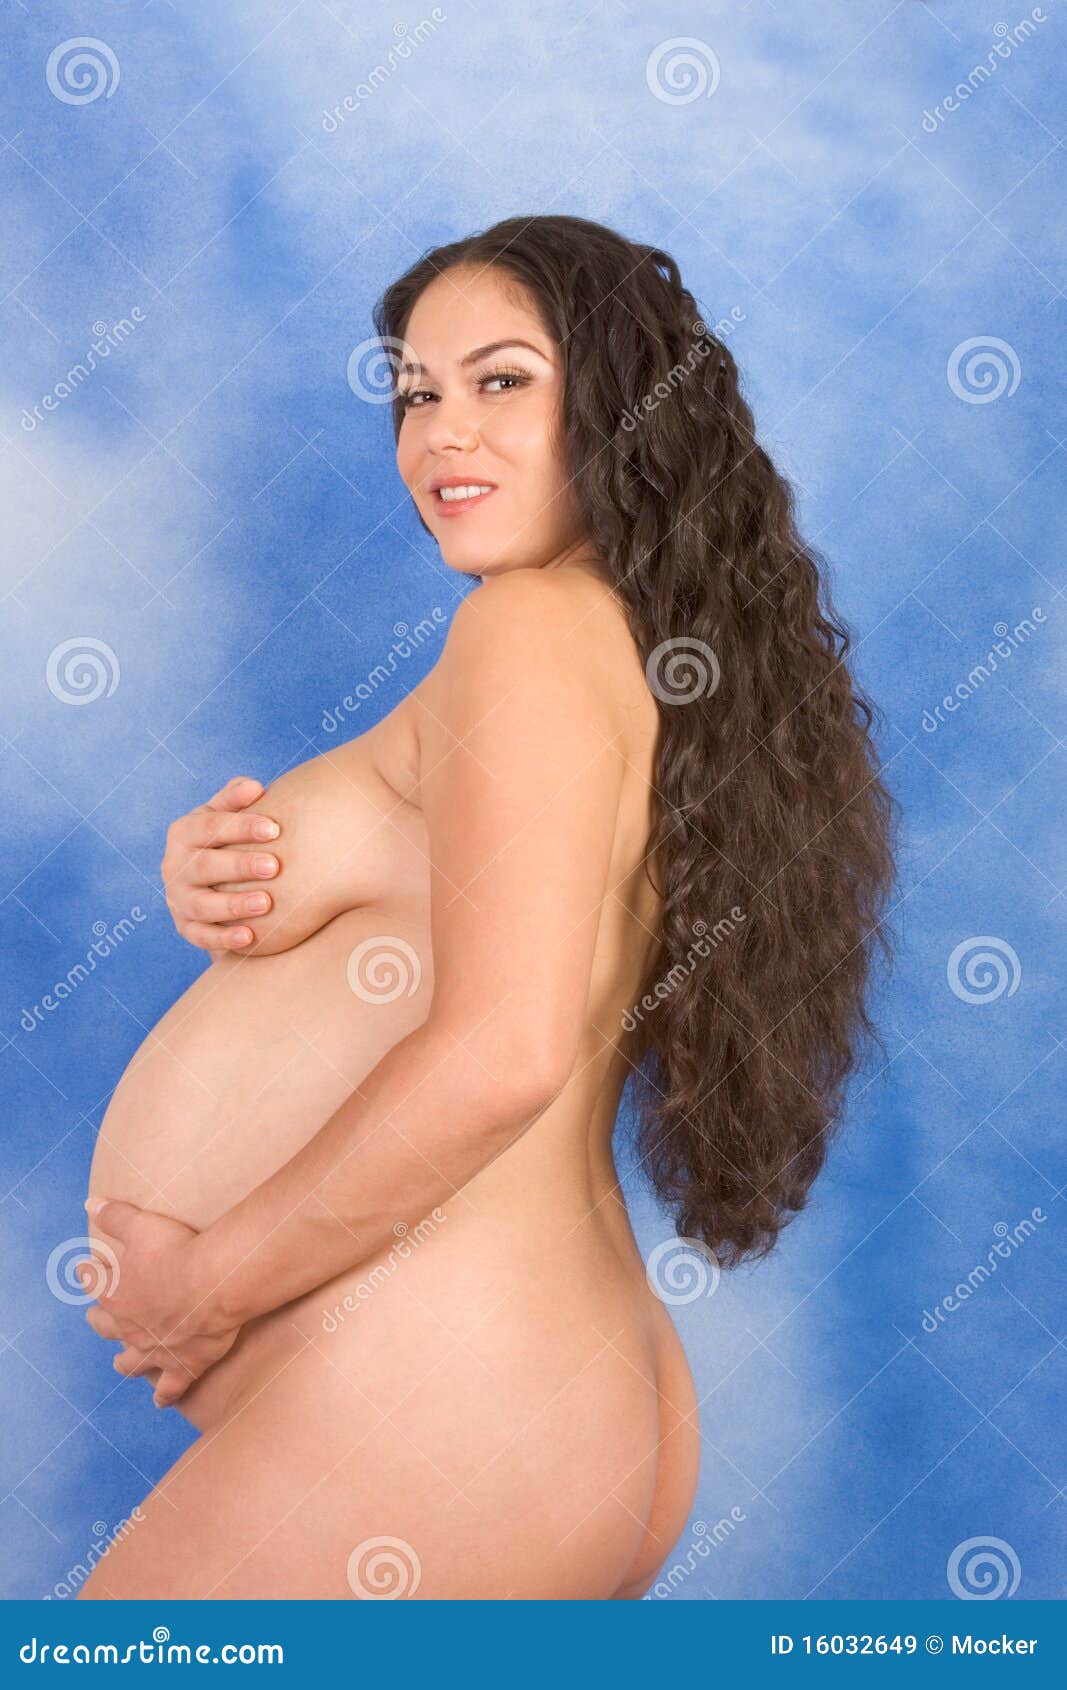 Pregnant latina naked